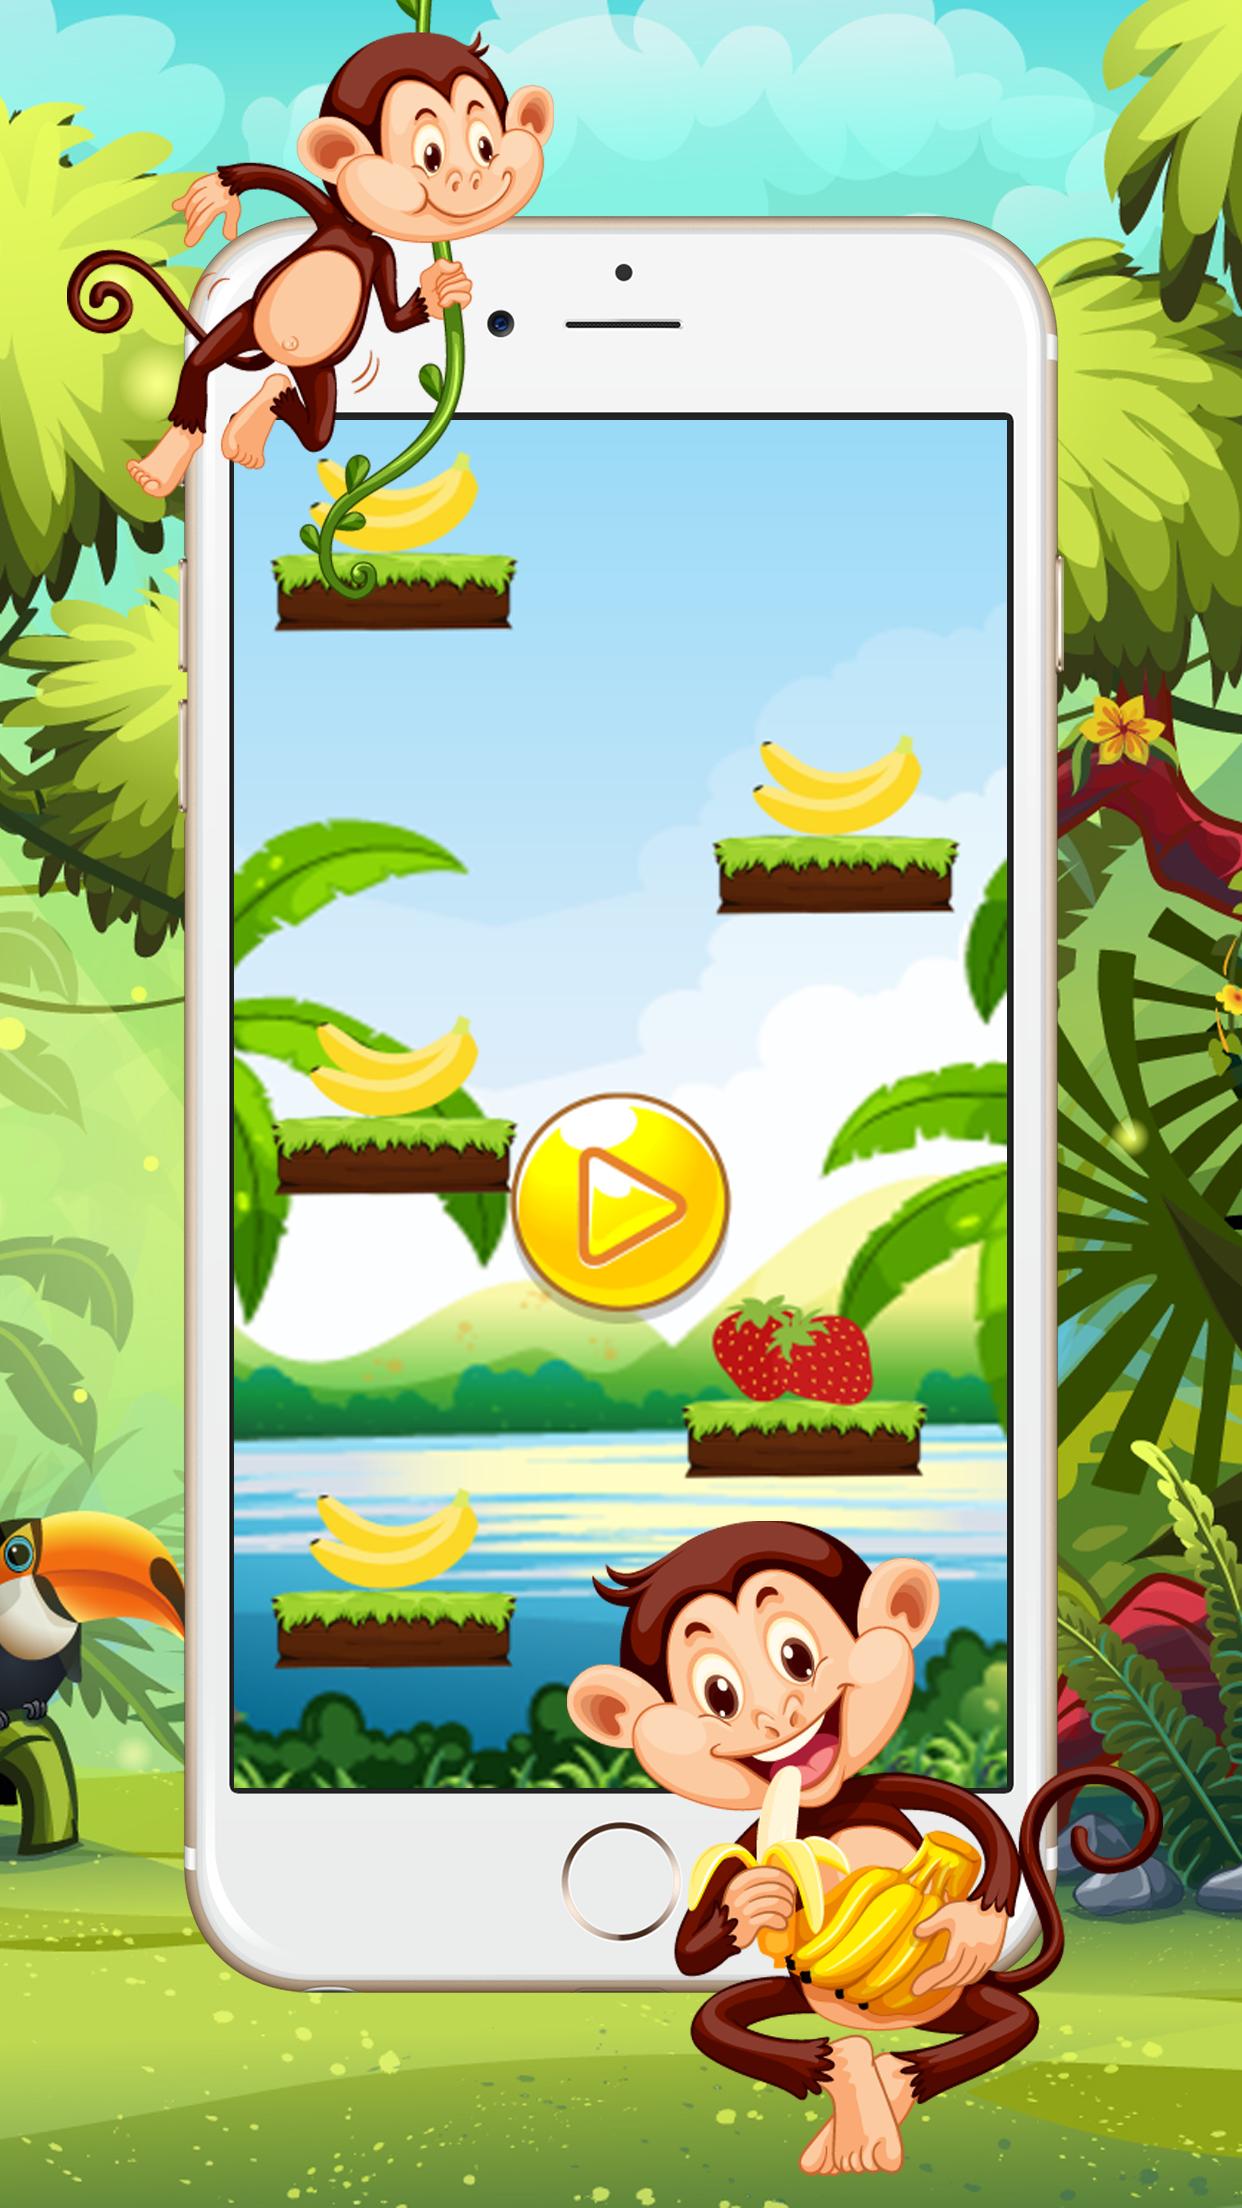 Бананы и обезьяны игра где. Прыгающая обезьяна игра. Игра про обезьян. Игра обезьяна и бананы. Популярная игра с обезьянкой.